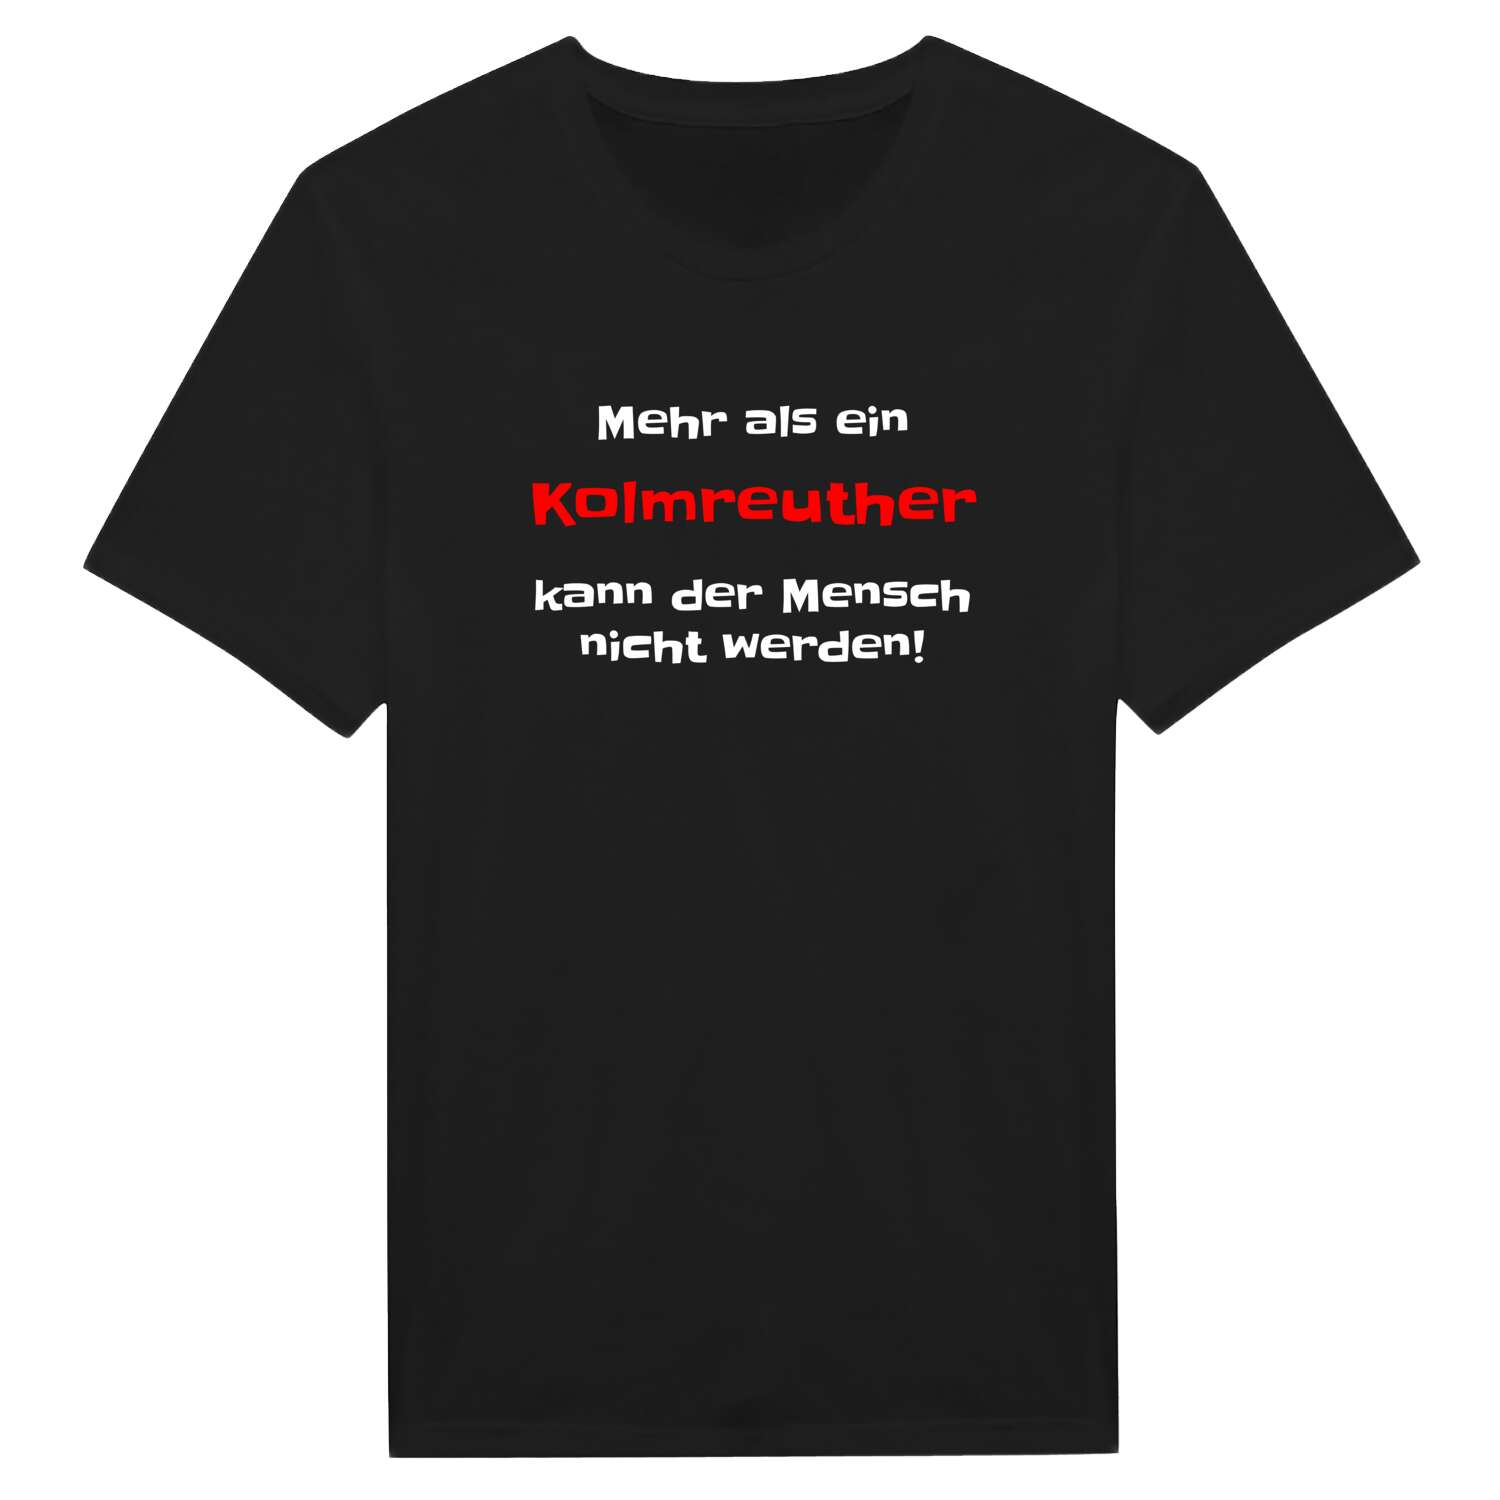 Kolmreuth T-Shirt »Mehr als ein«